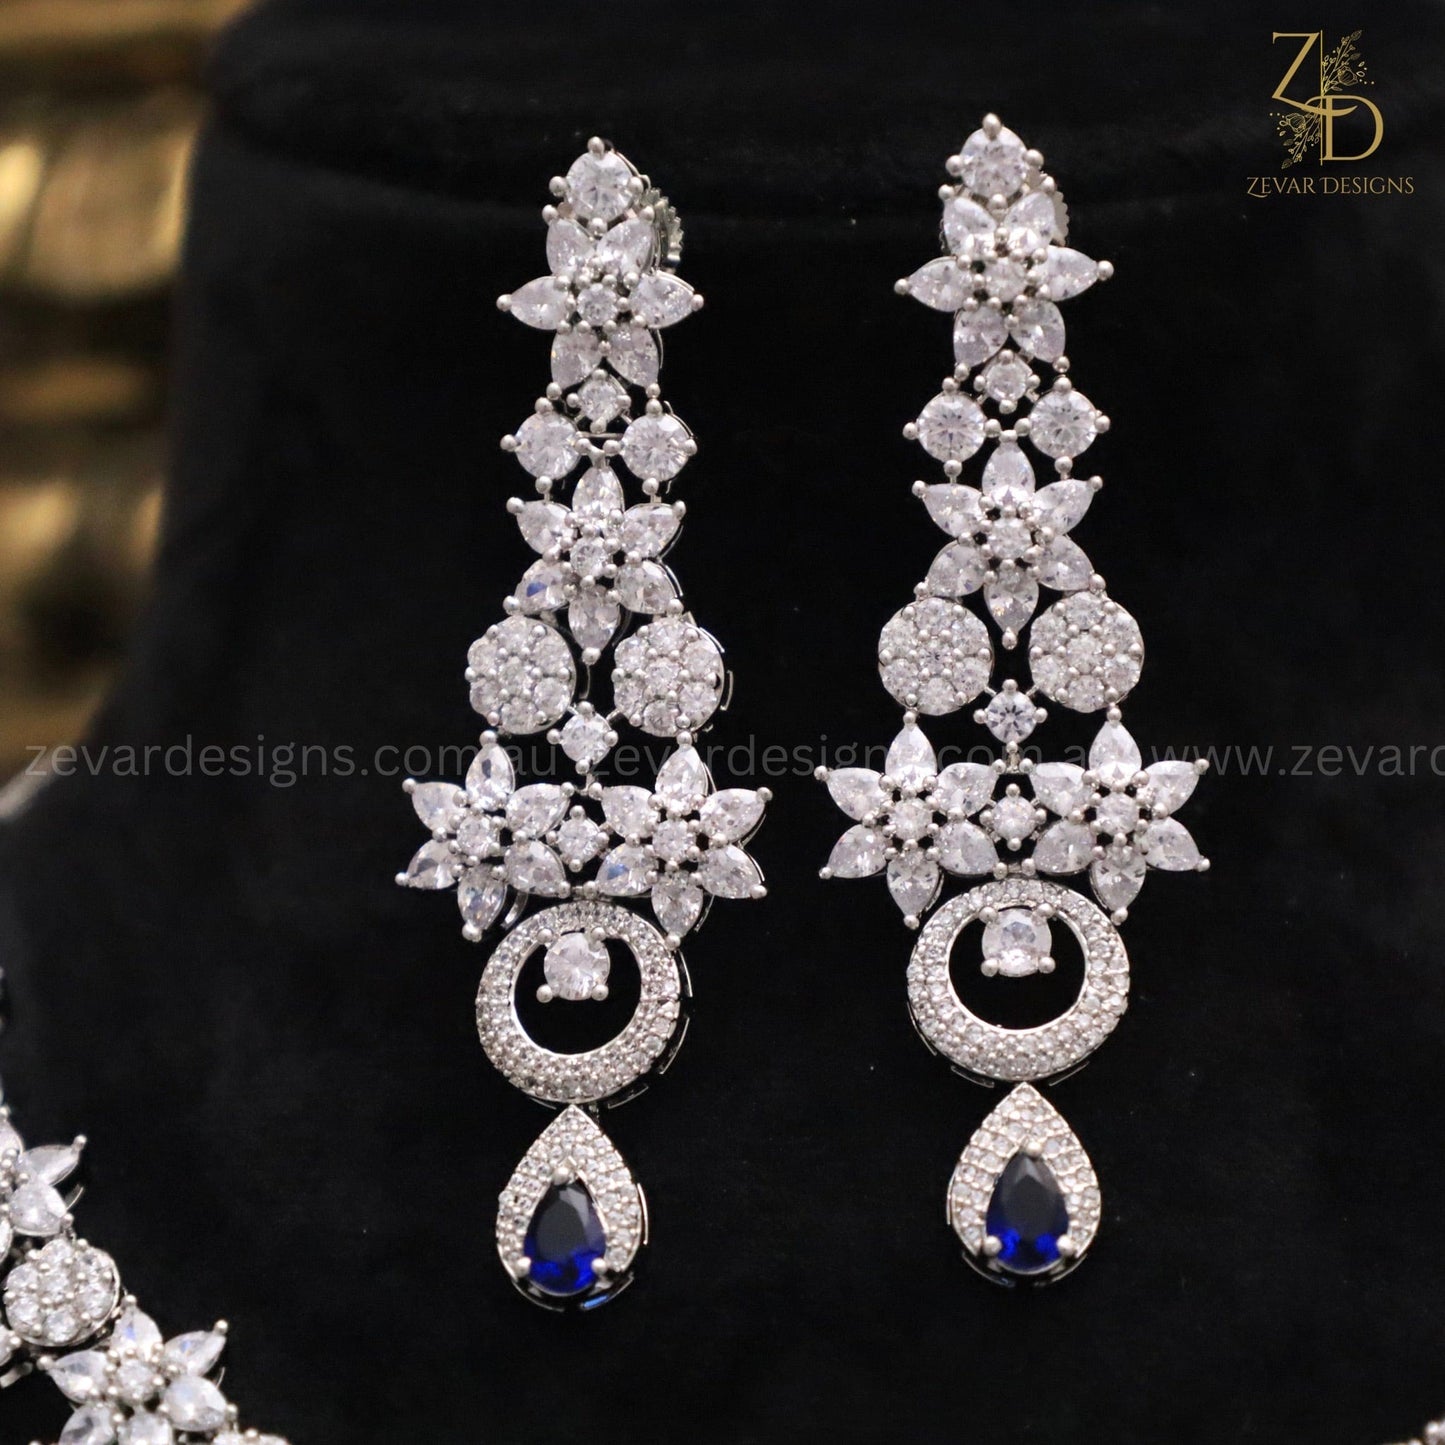 Zevar Designs Necklace Sets - AD AD Necklace Set with Sapphire Blue Stones